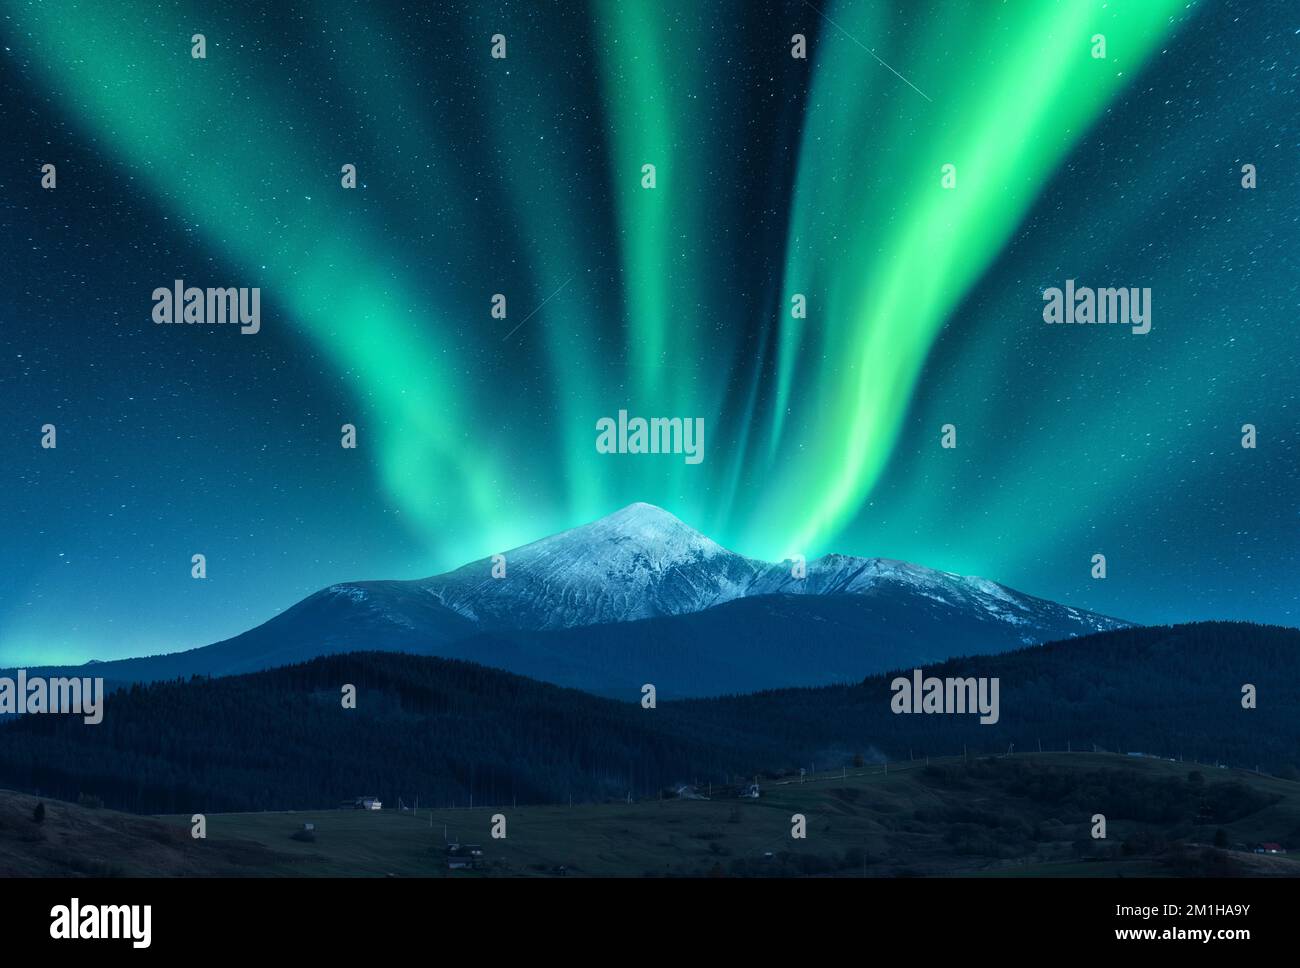 Aurora borealis over the snow covered mountain peak Stock Photo